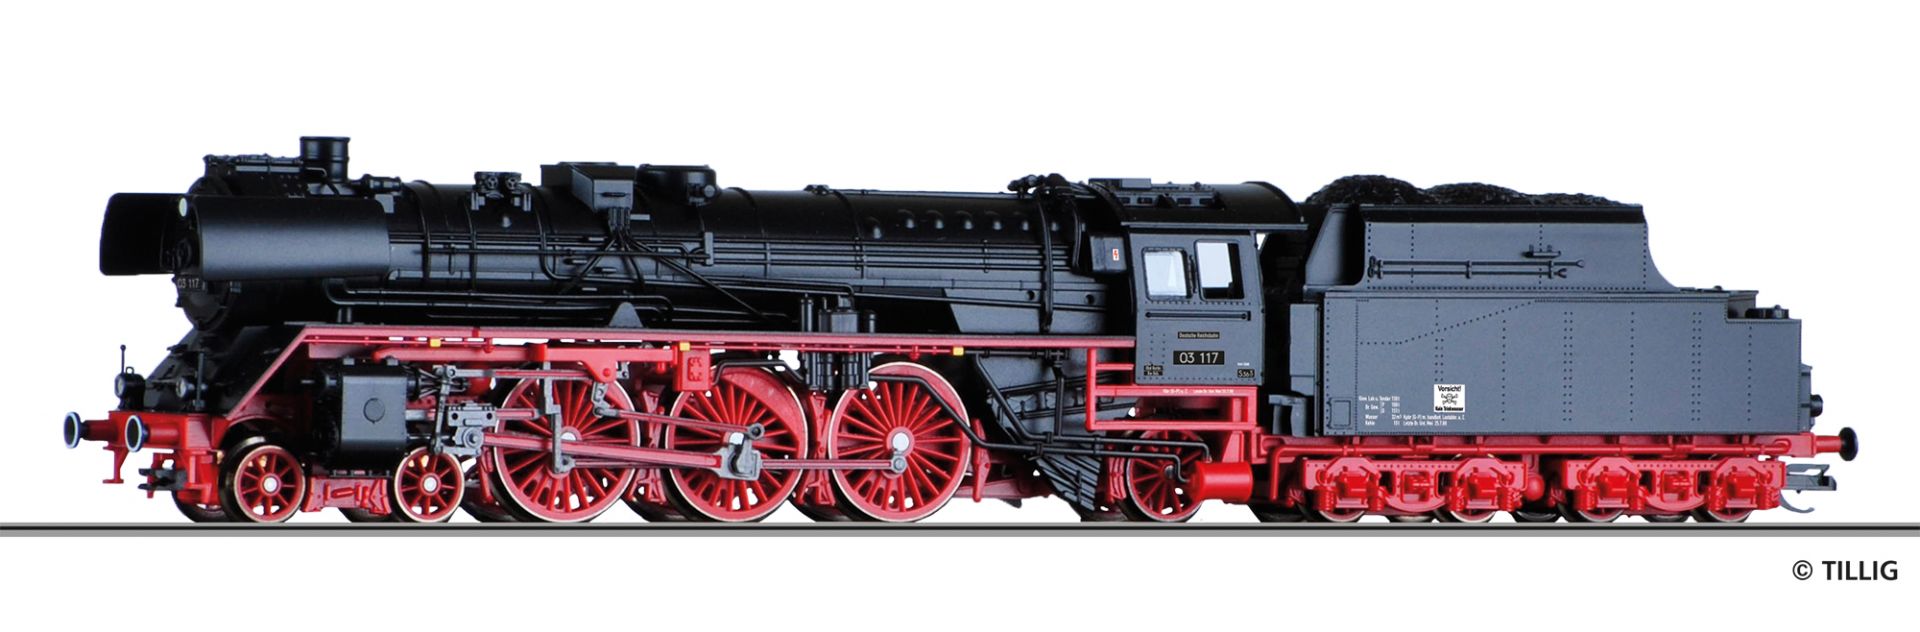 Steam locomotive BR 03.2